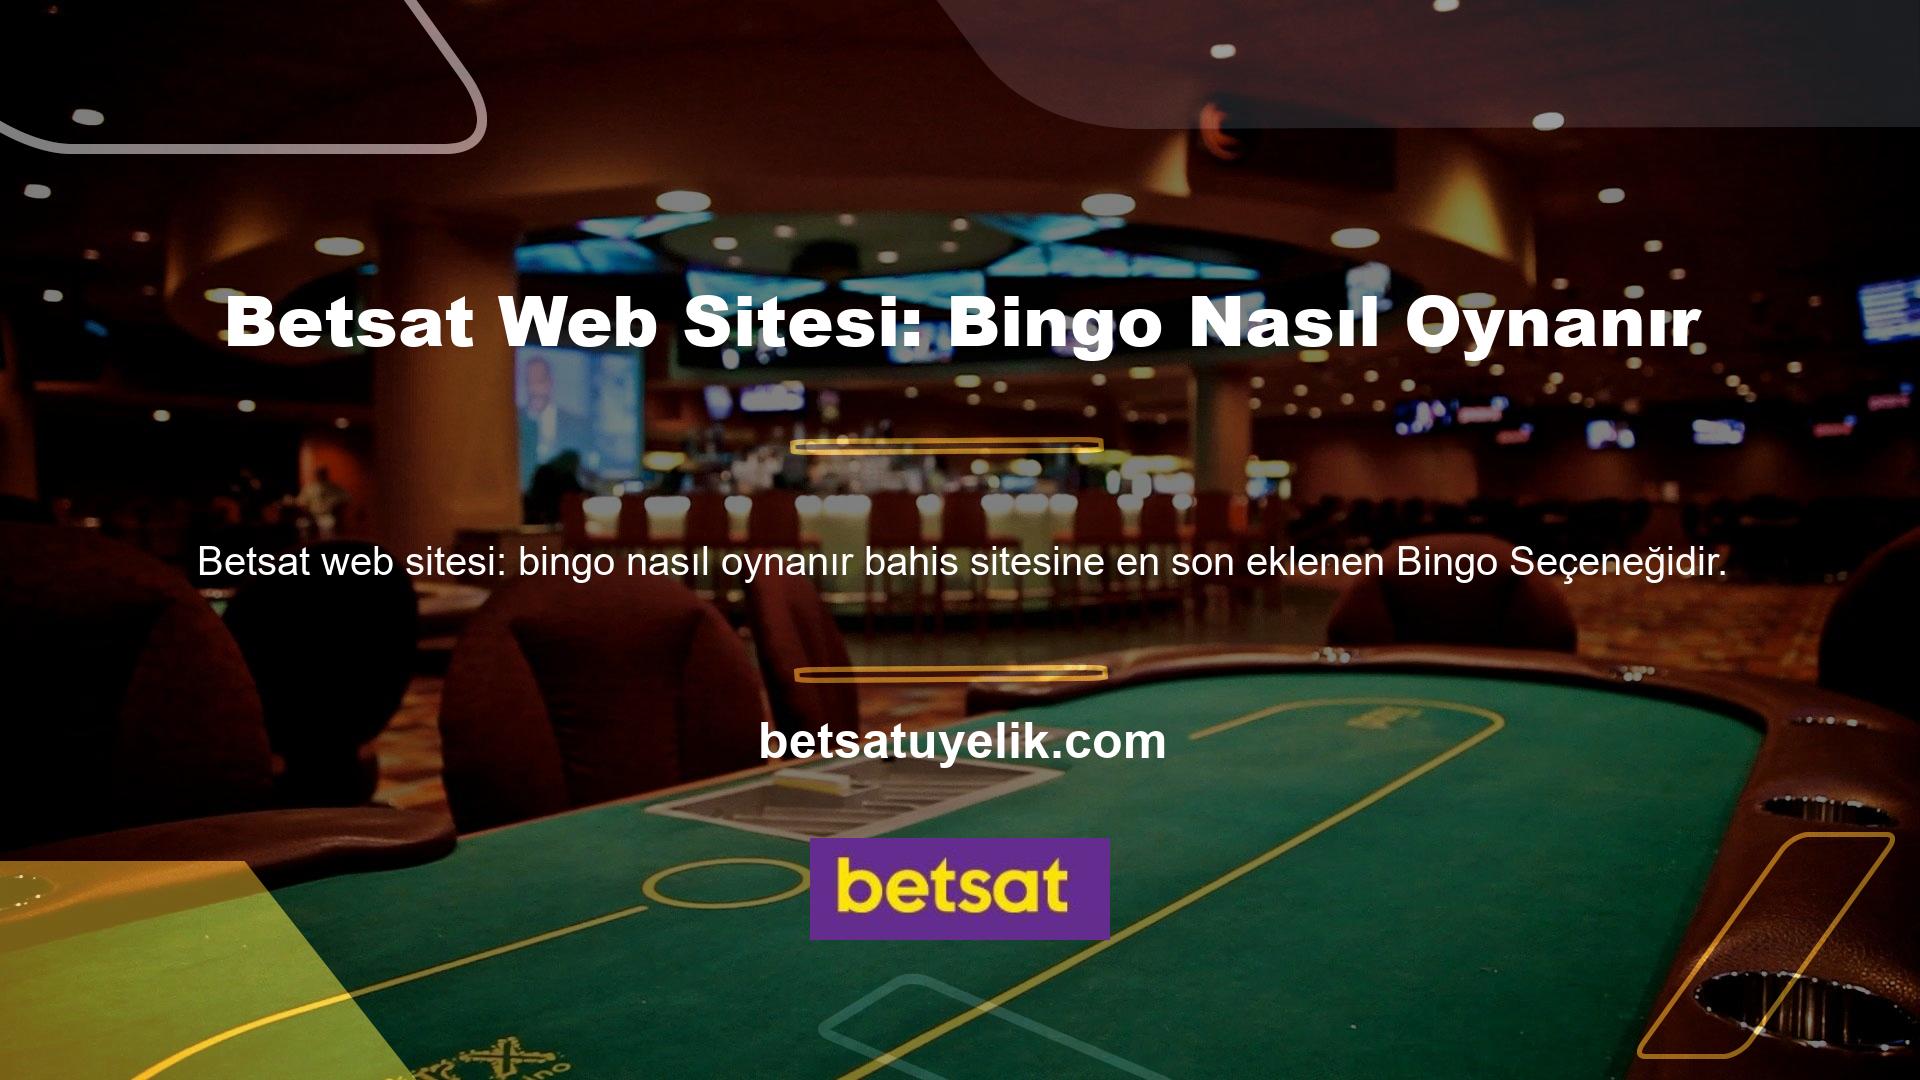 Bu sayfayı beğenenlerin aynı zamanda Betsat sitesini de beğendikleri ve bingo oynama hakkında bilgi alacakları açıktır